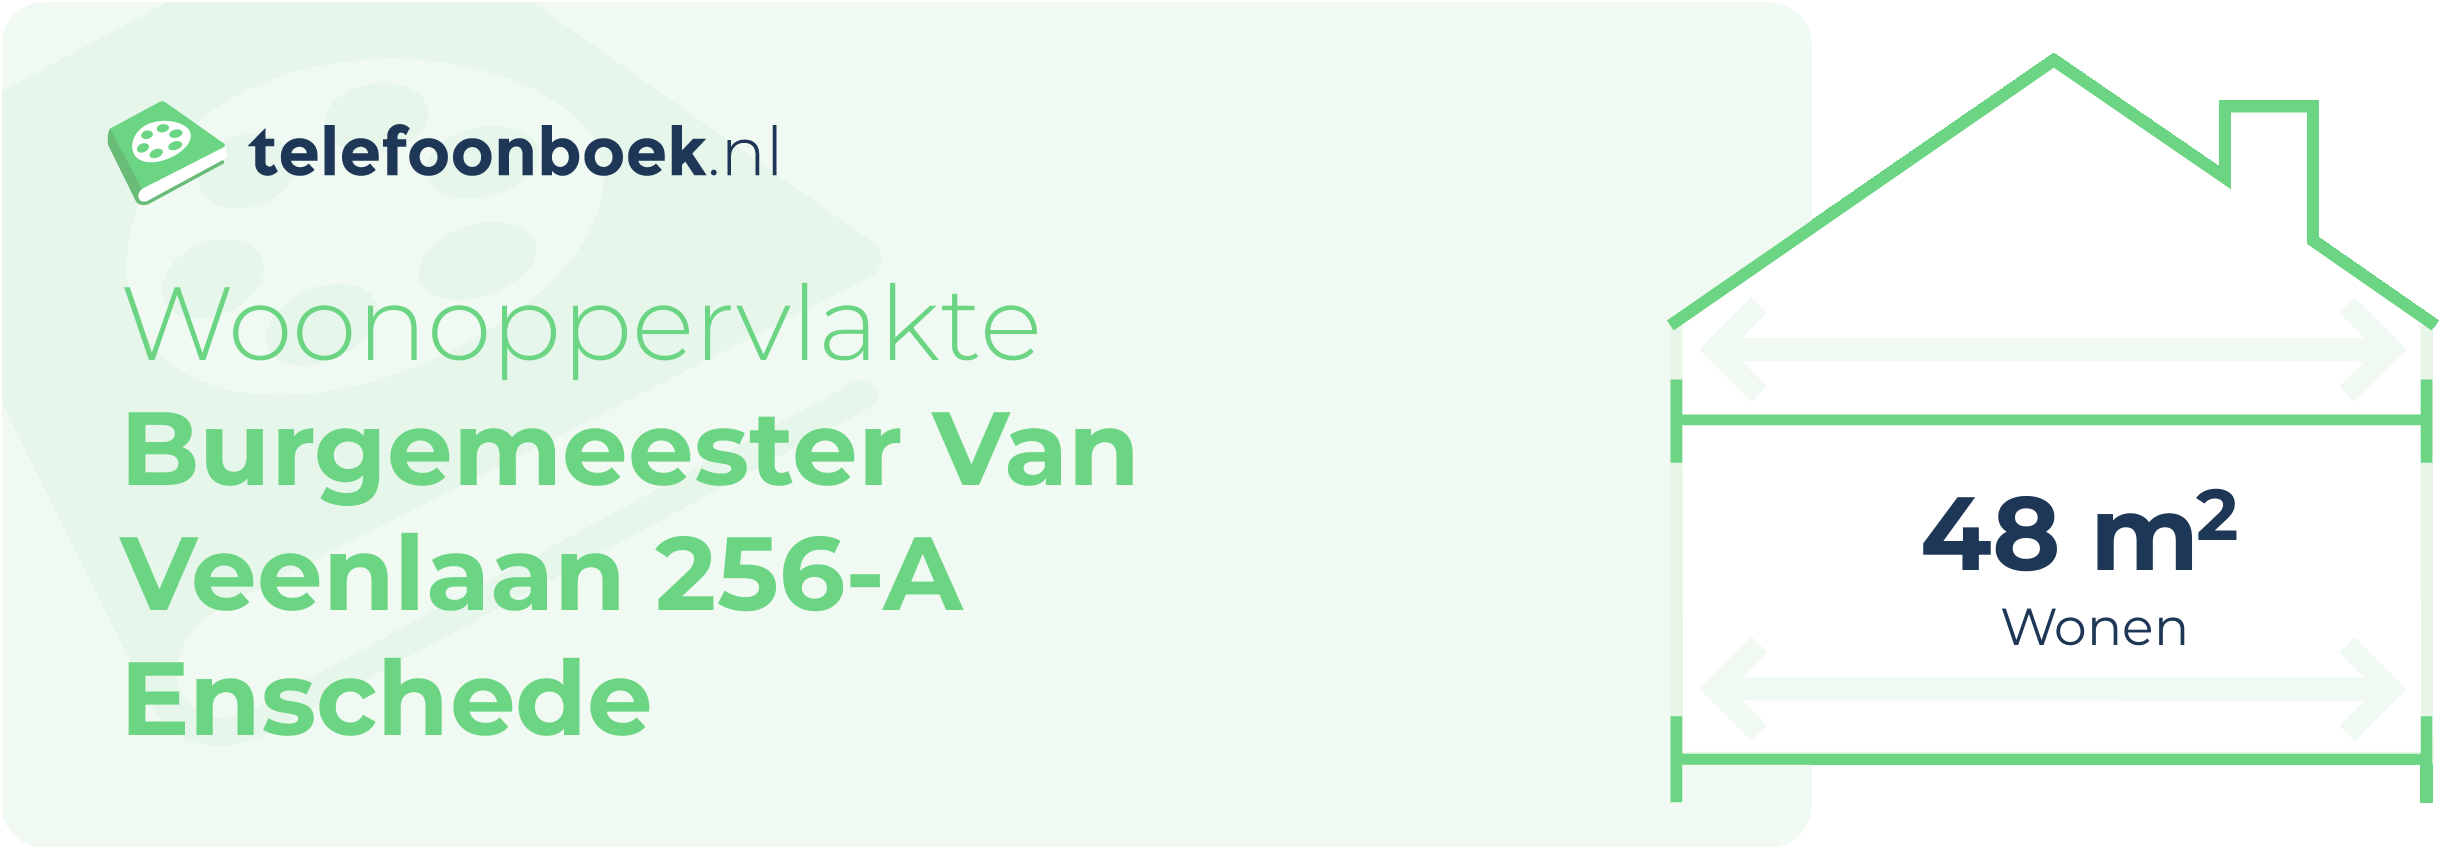 Woonoppervlakte Burgemeester Van Veenlaan 256-A Enschede